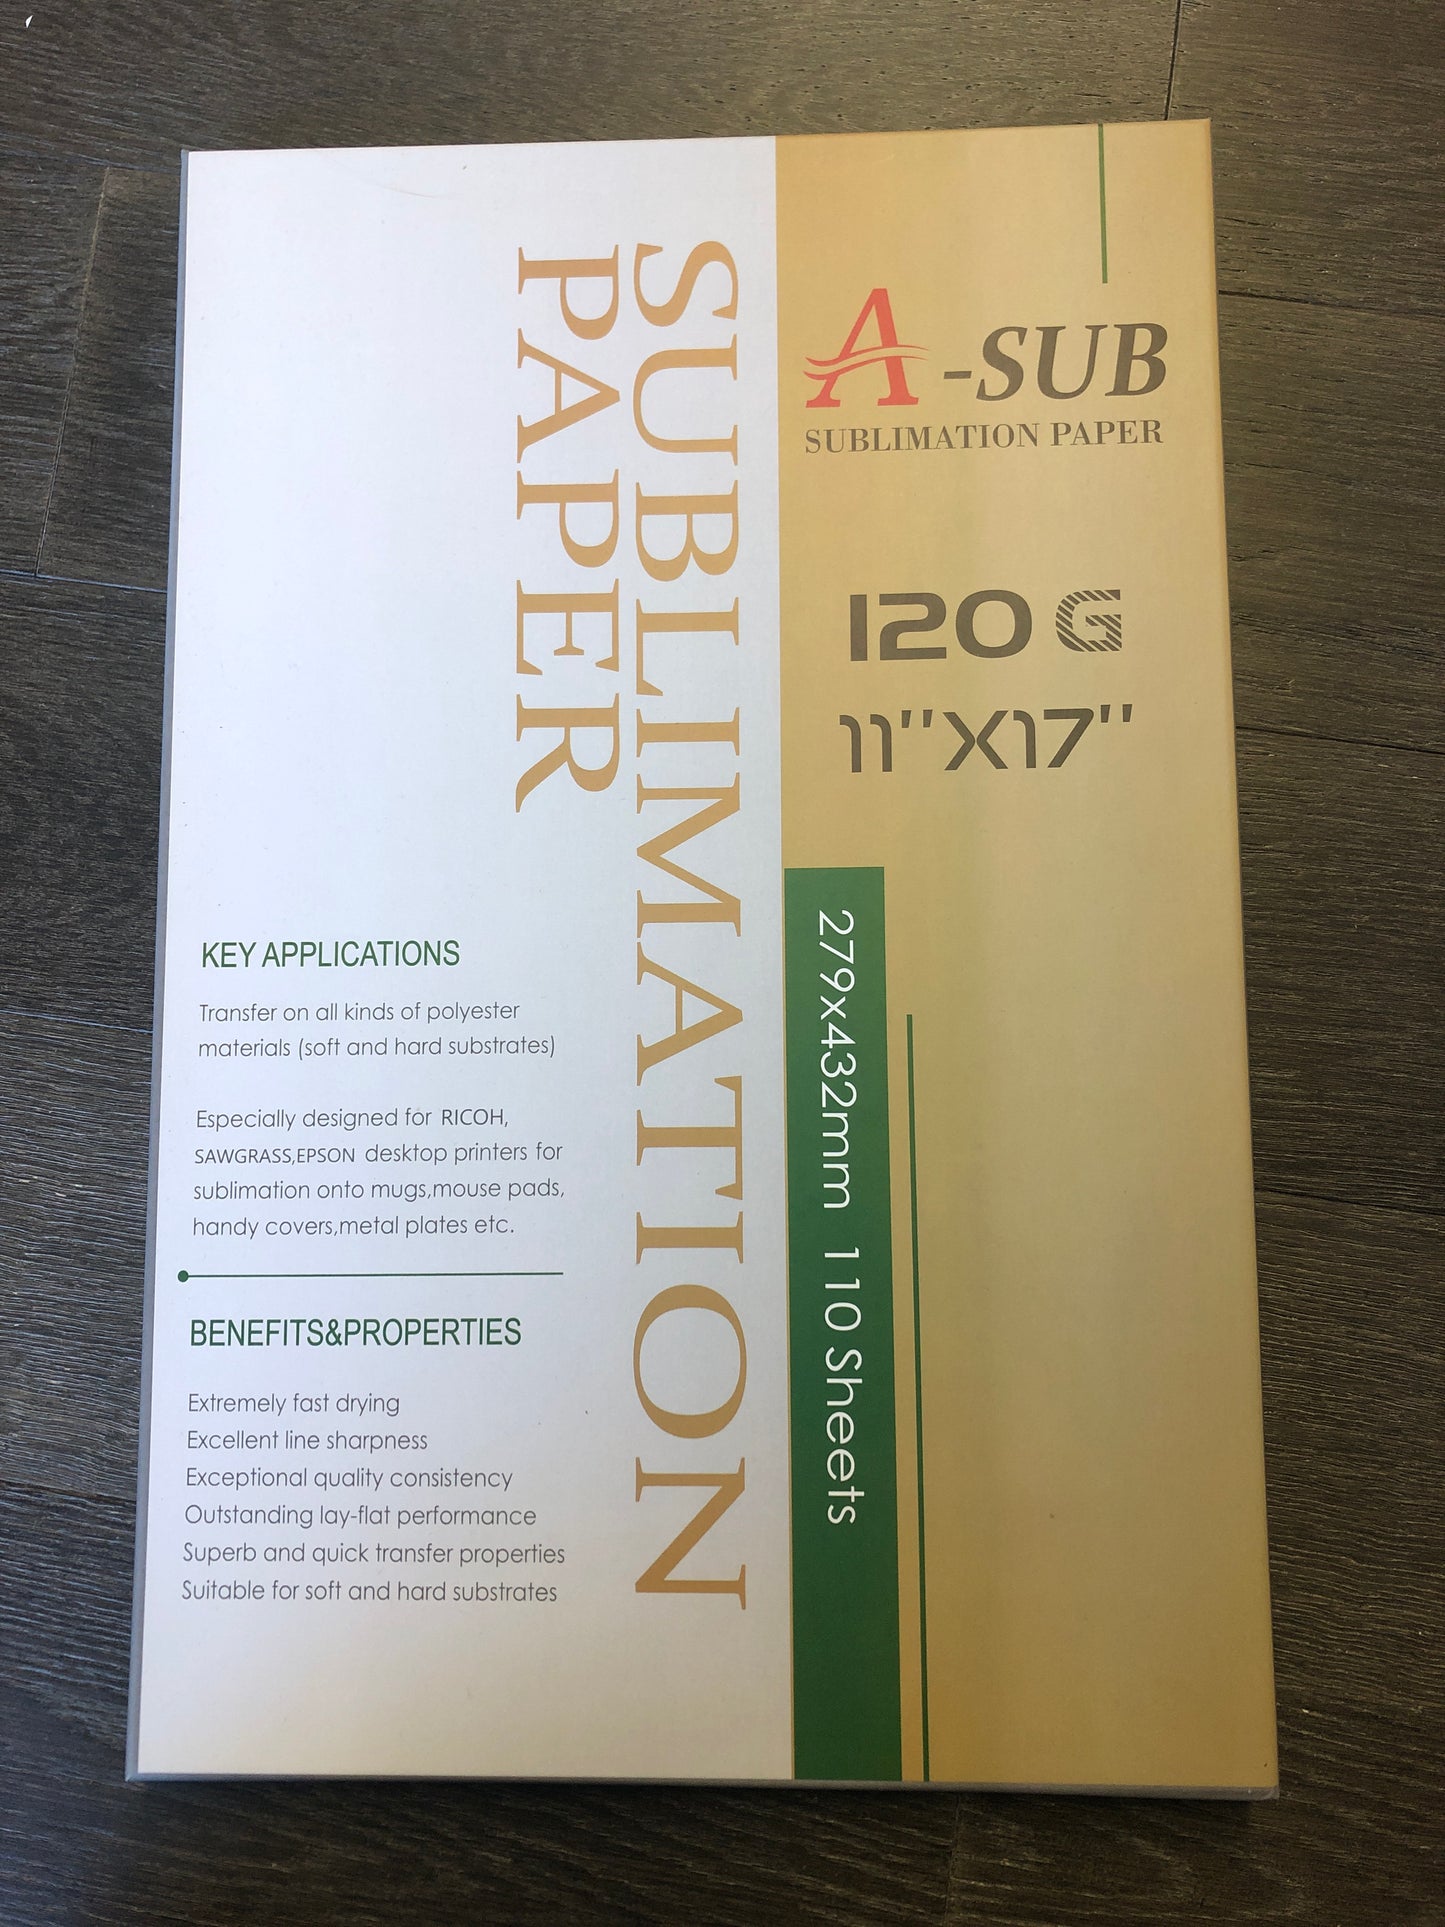 A - SUB 120 Sublimation Paper